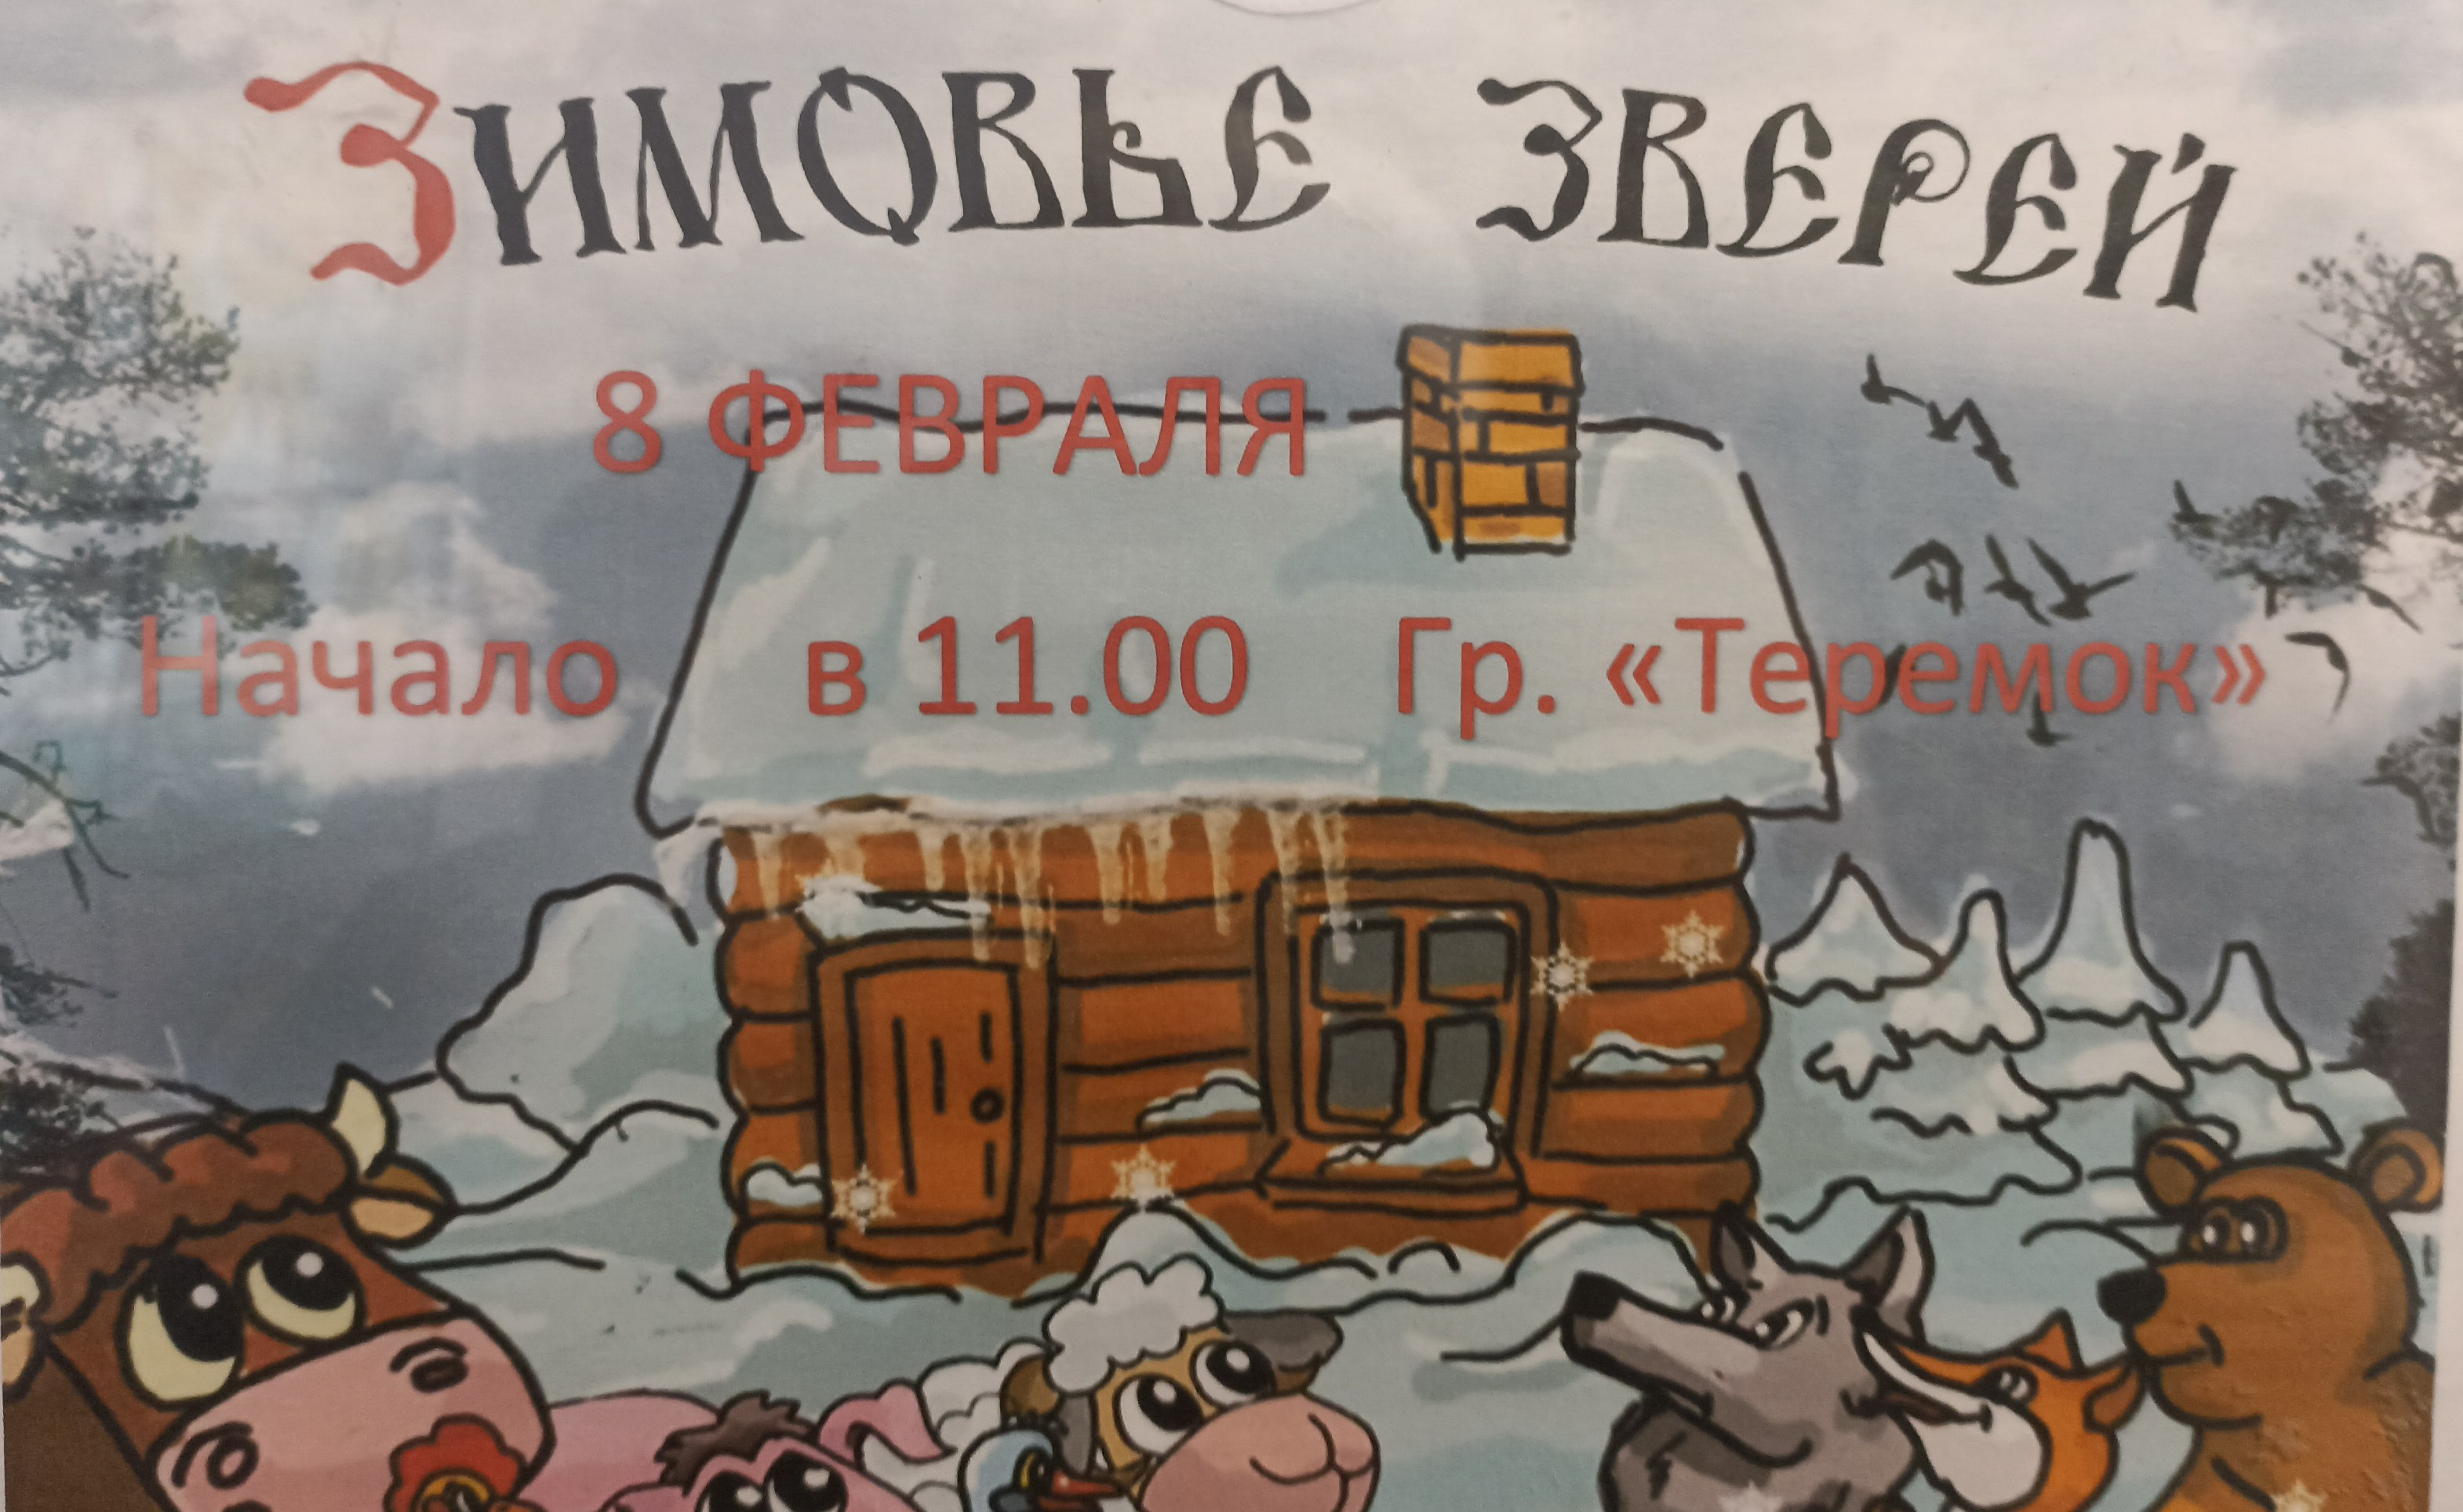 Сказка зимовье зверей русская народная сказка